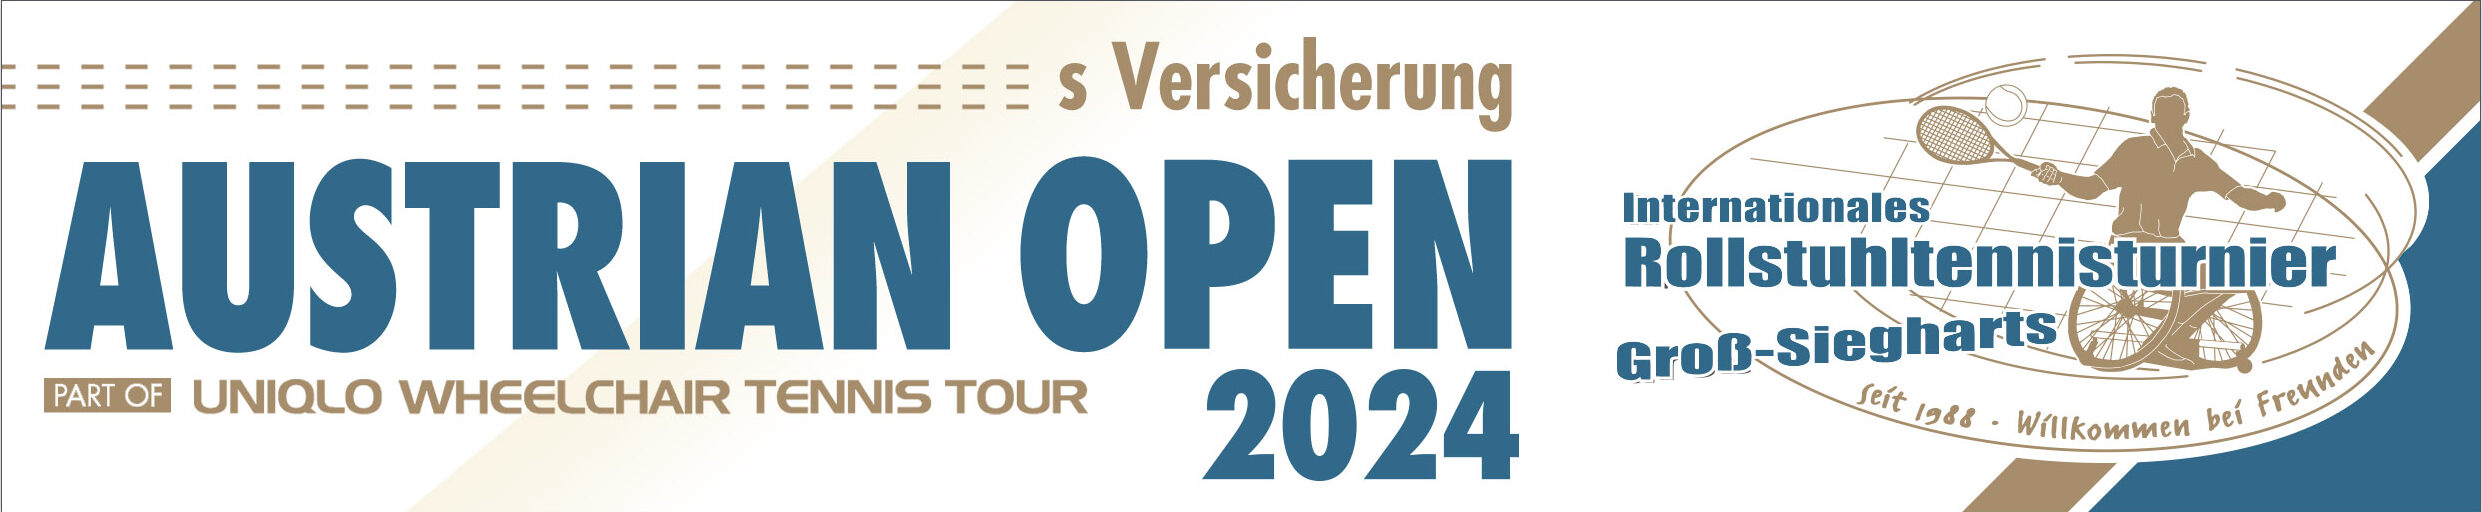 s Versicherung Austrian Open 2024